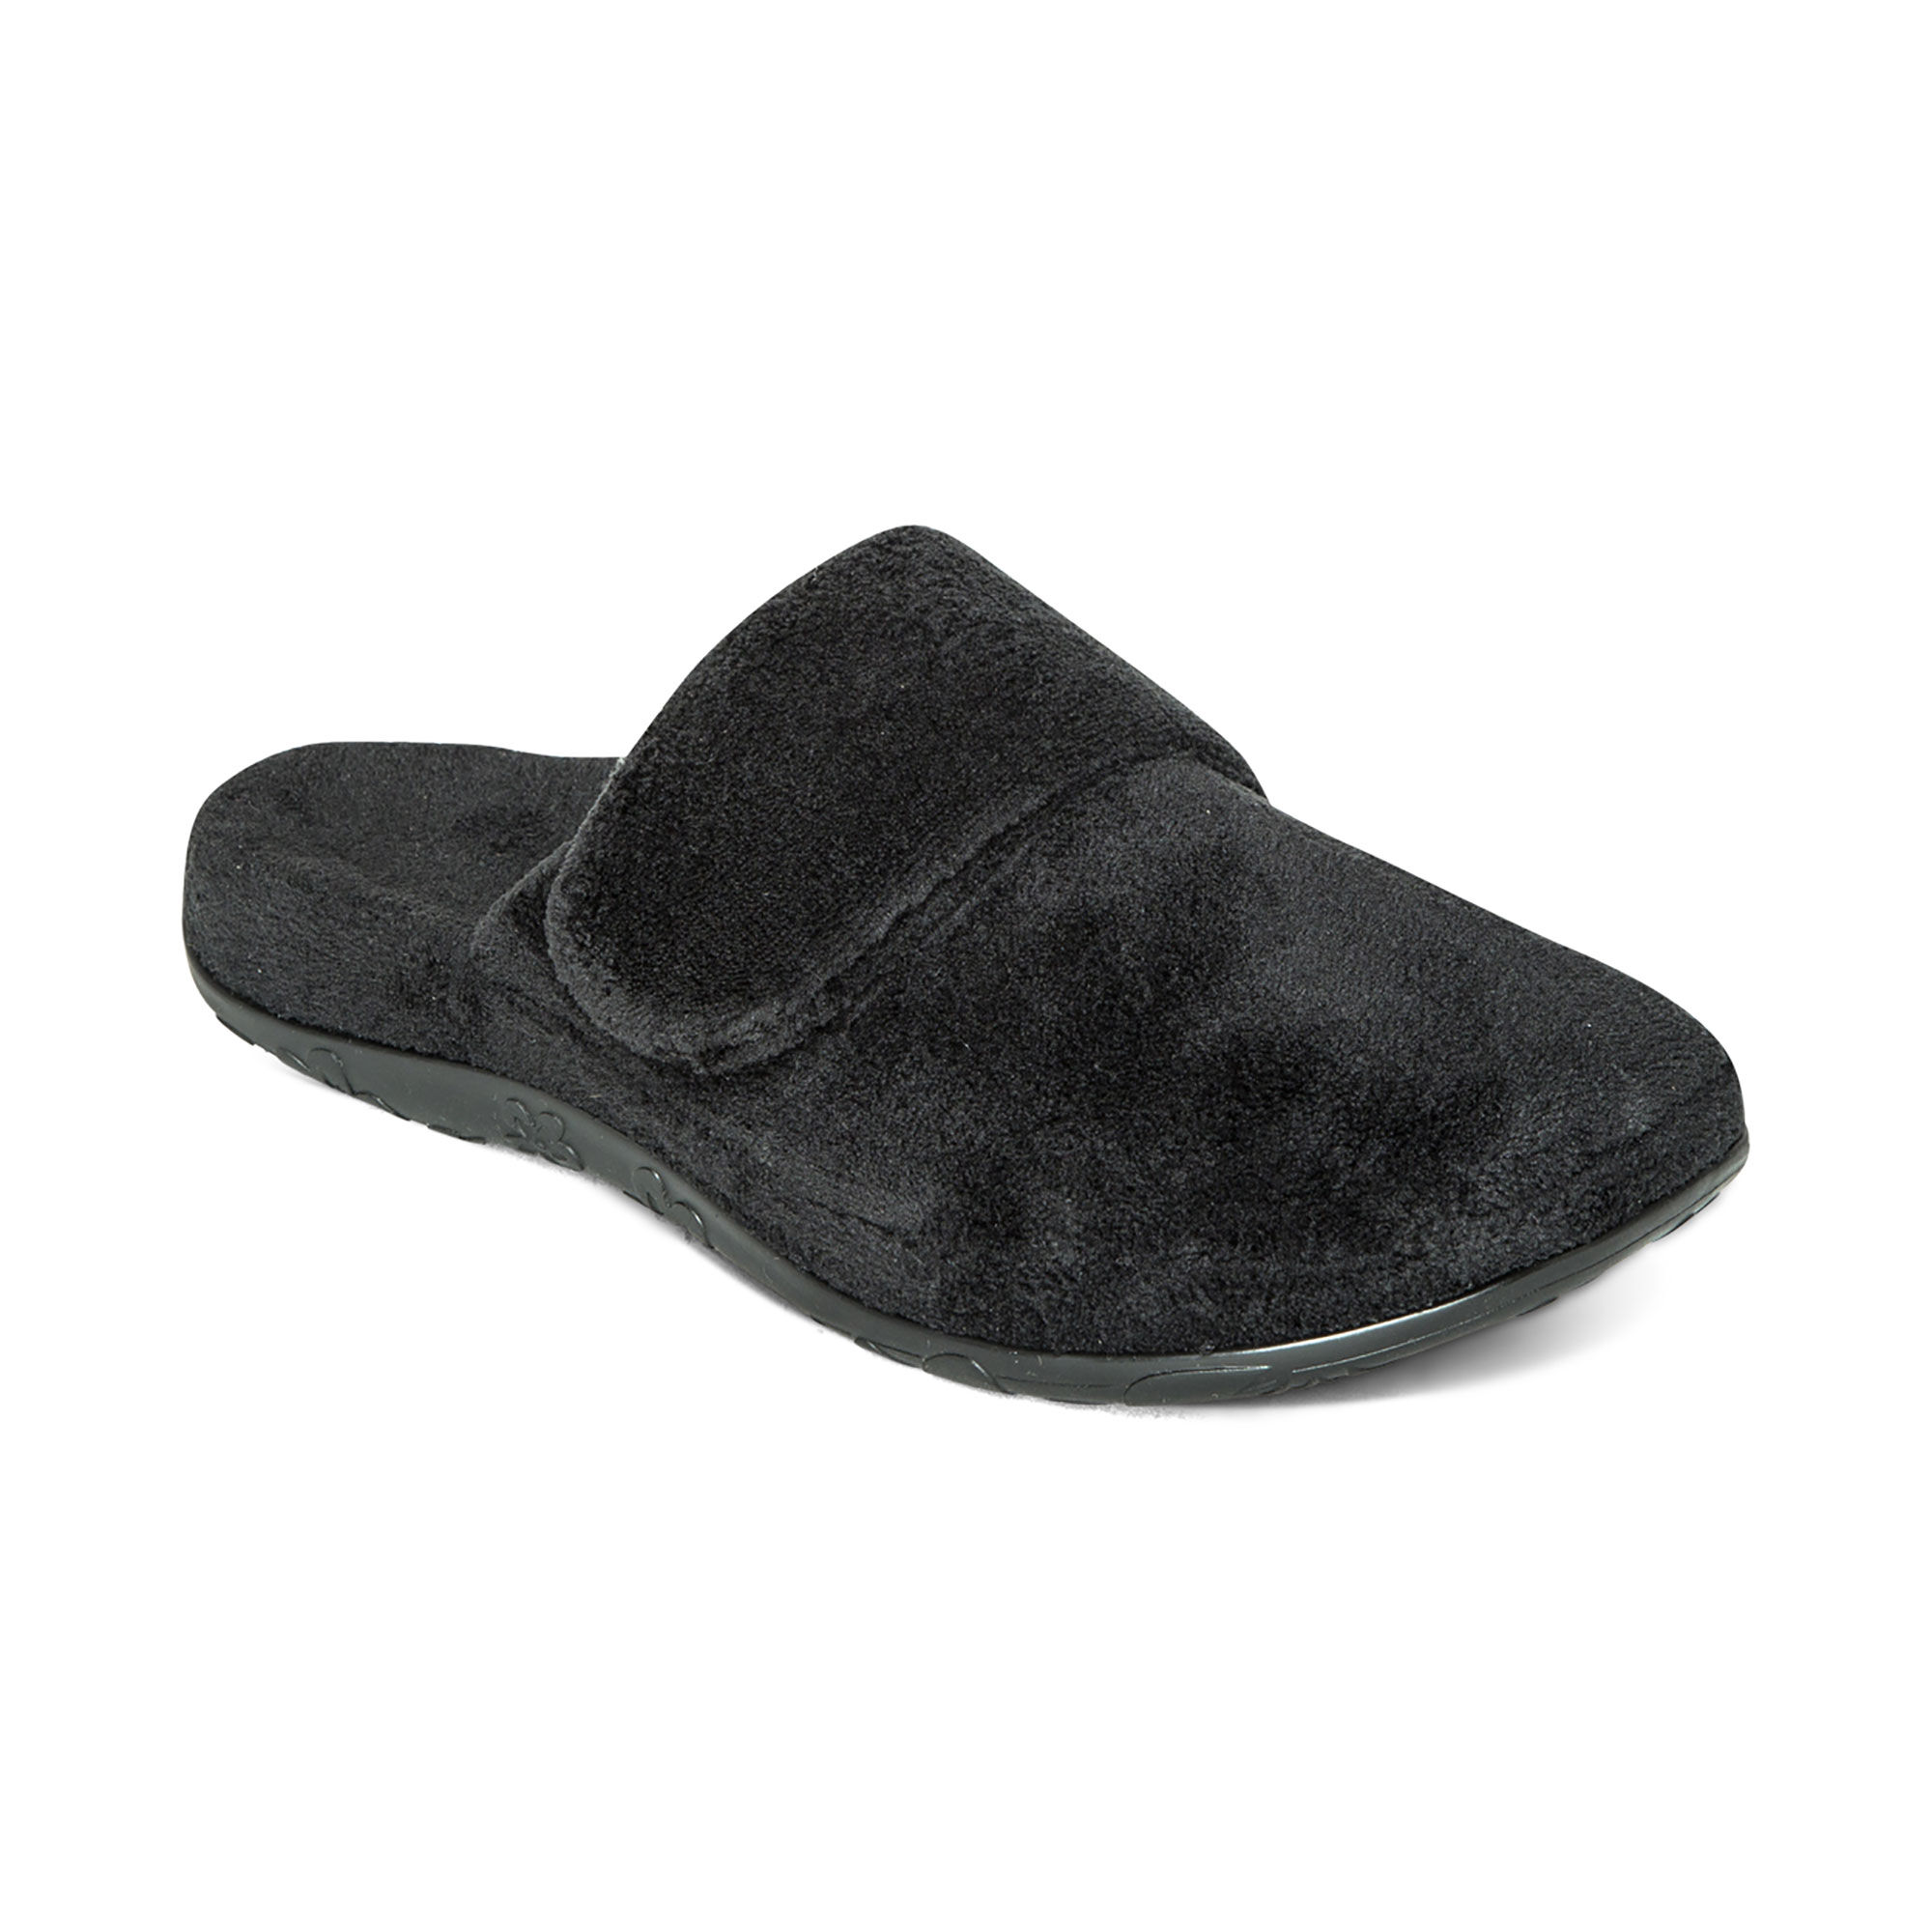 aetrex women's slippers